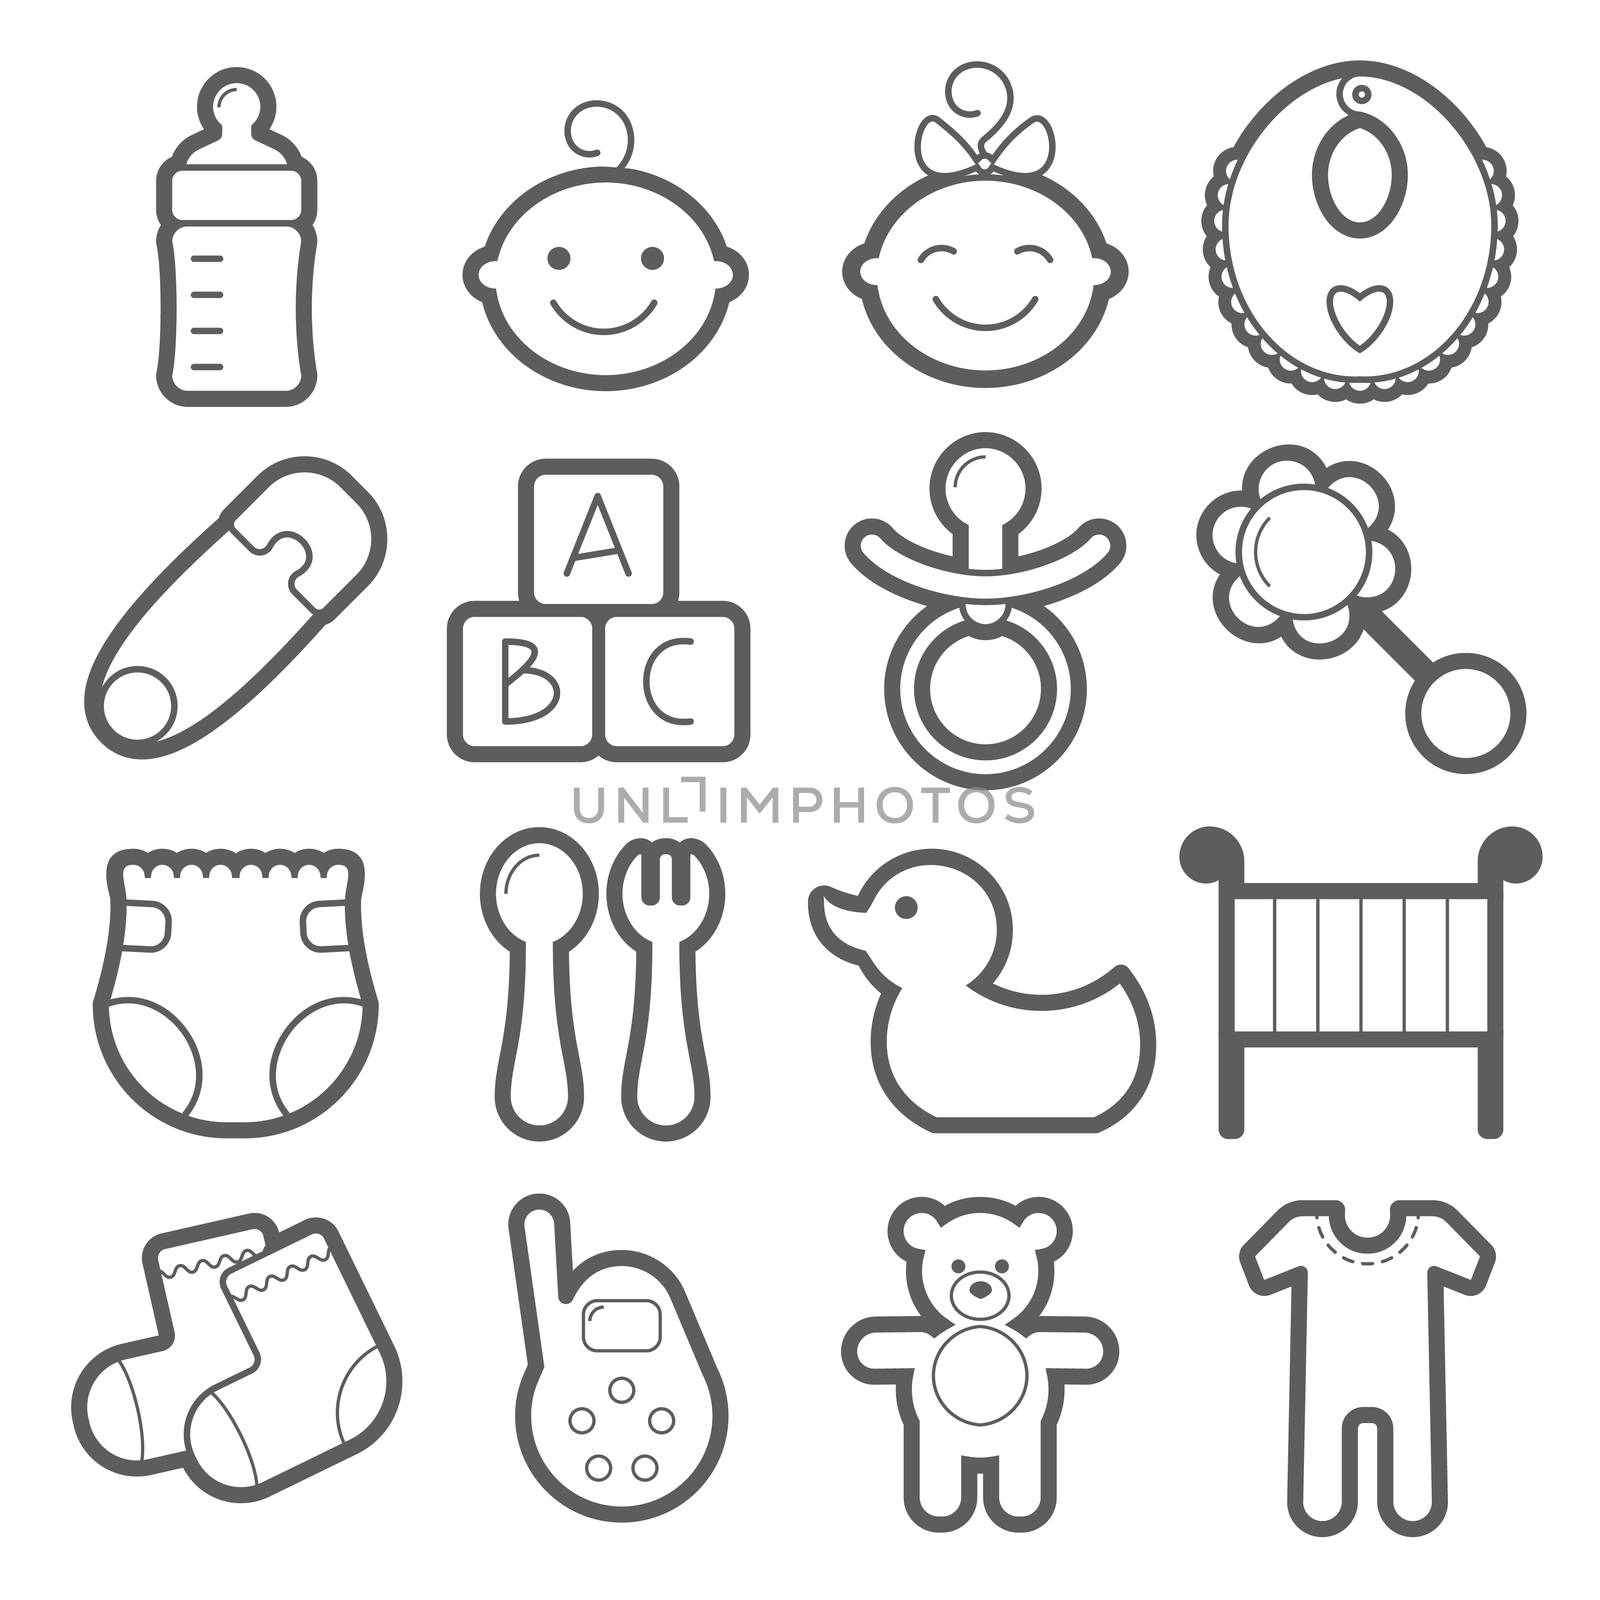 Baby icons set. illustration isolated on white background.